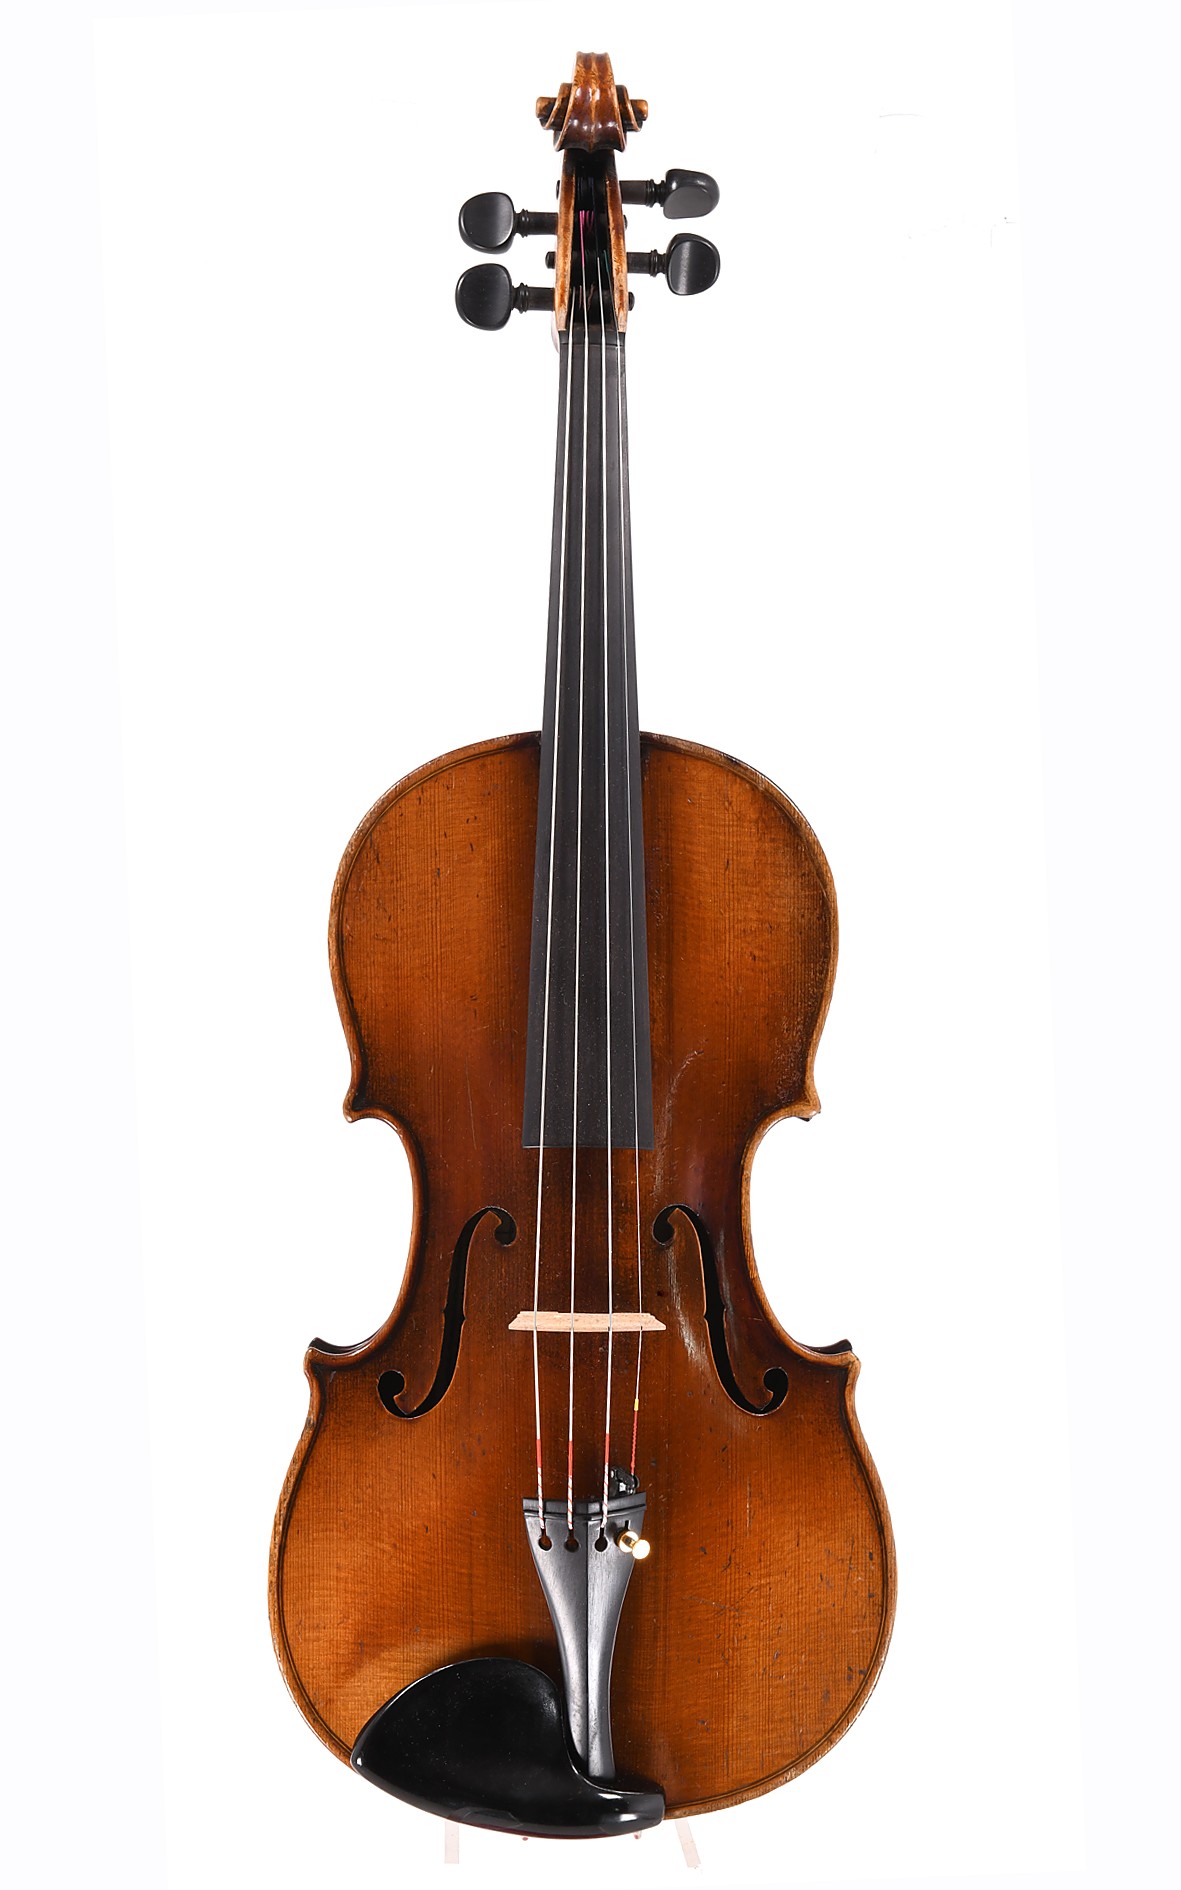 C. A. Wunderlich, antike Geige nach J. Stainer, um 1900 - Decke